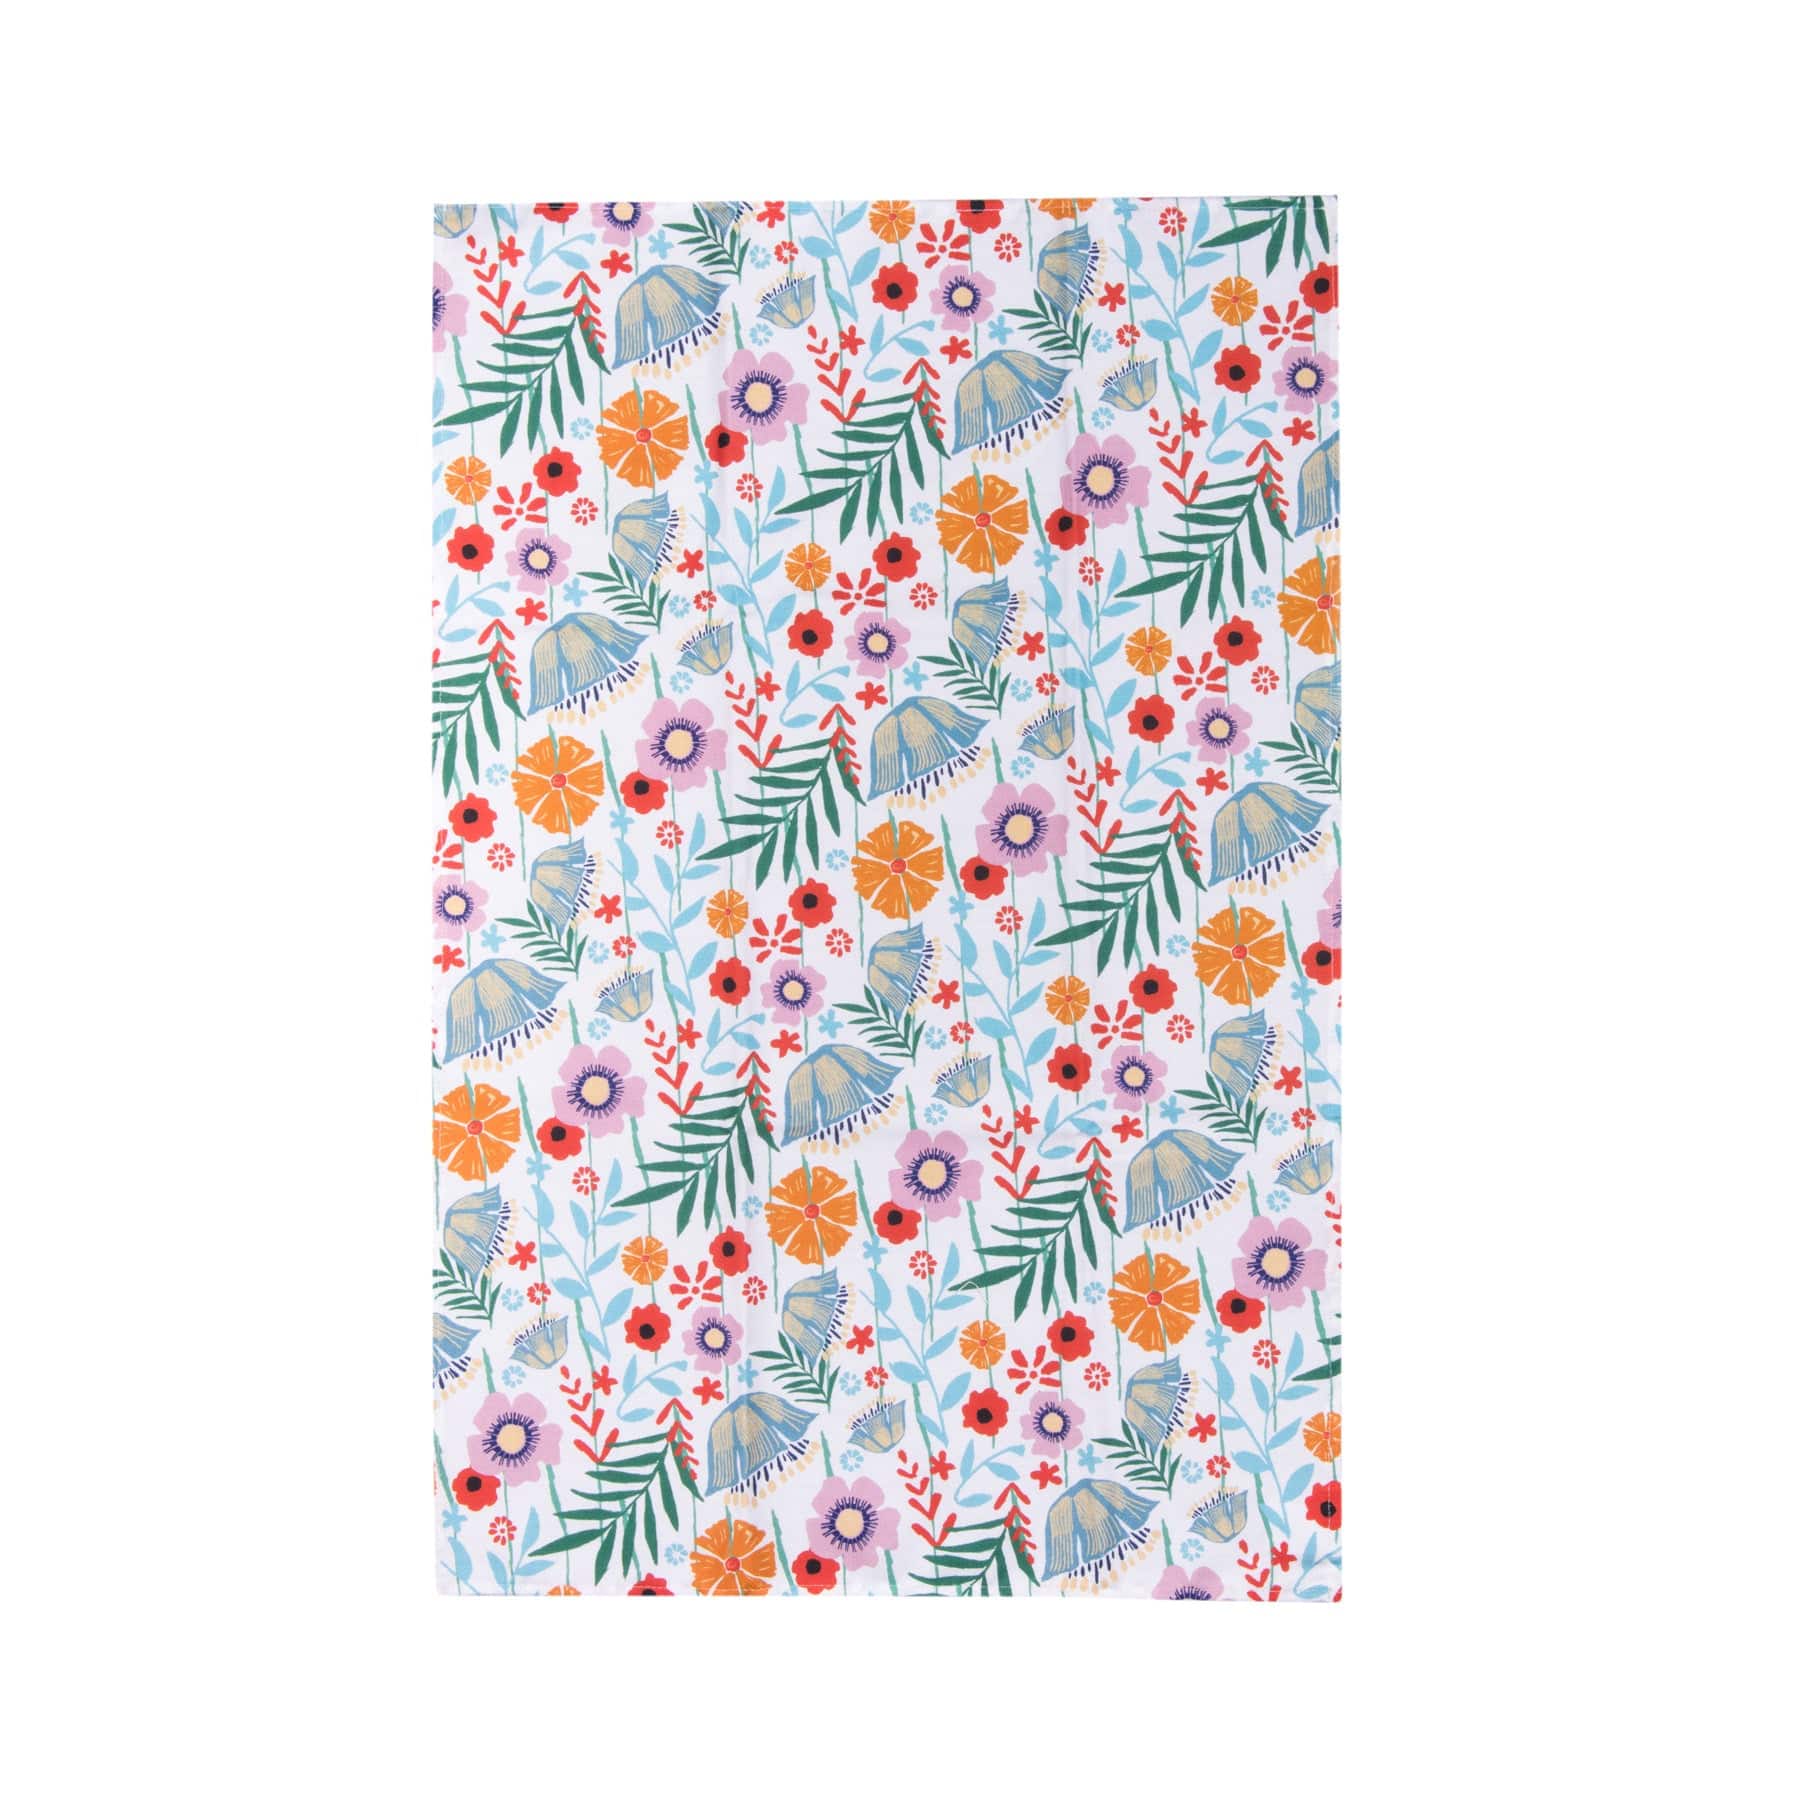 Floral print tea towel